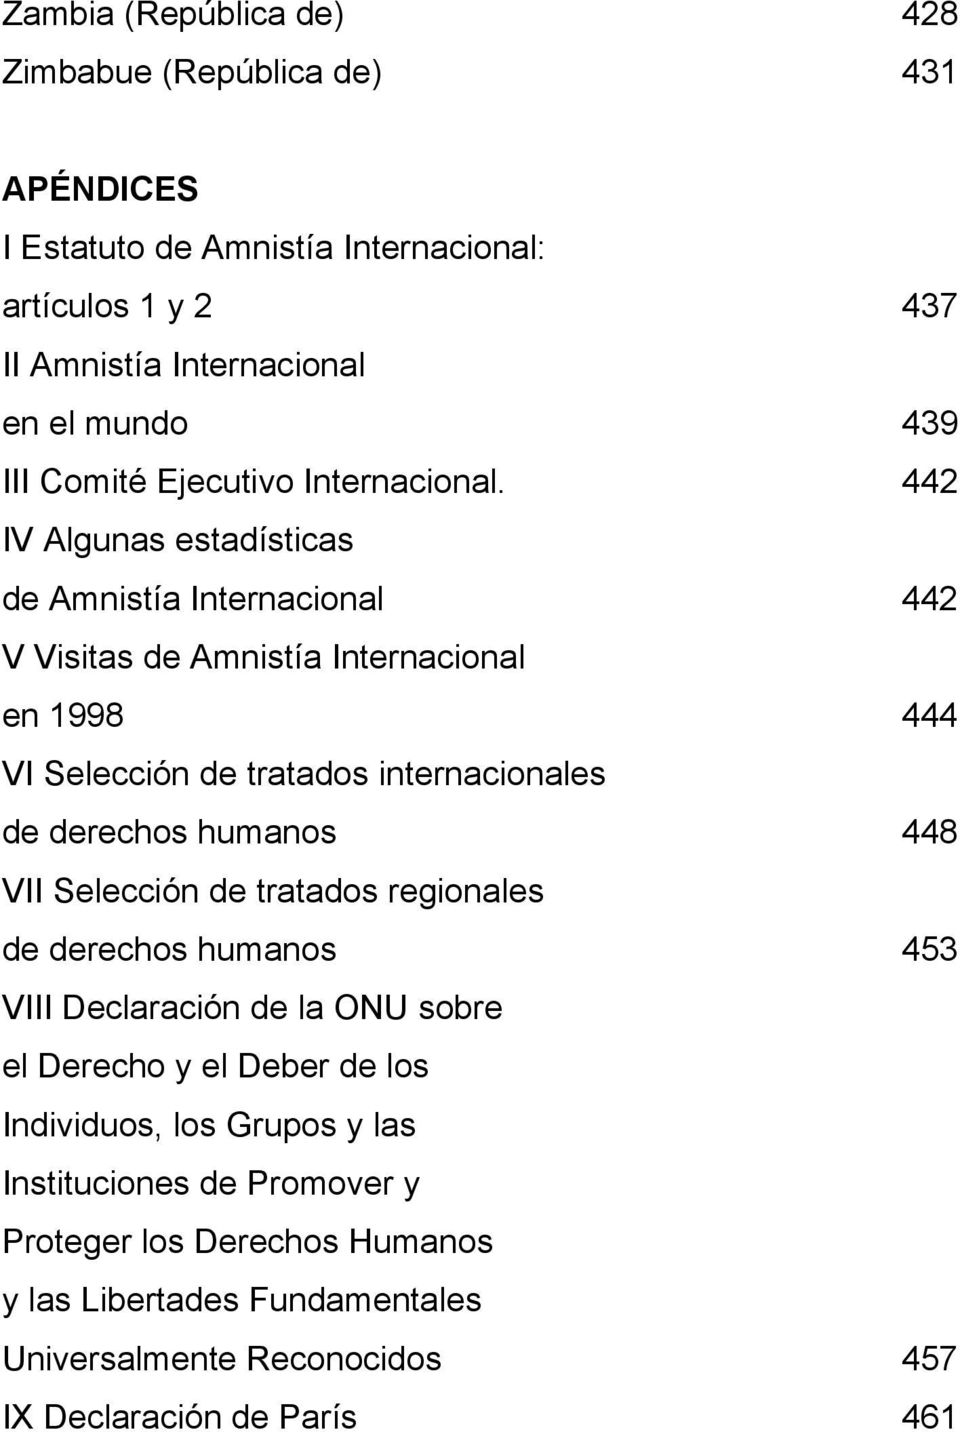 442 IV Algunas estadísticas de Amnistía Internacional 442 V Visitas de Amnistía Internacional en 1998 444 VI Selección de tratados internacionales de derechos humanos